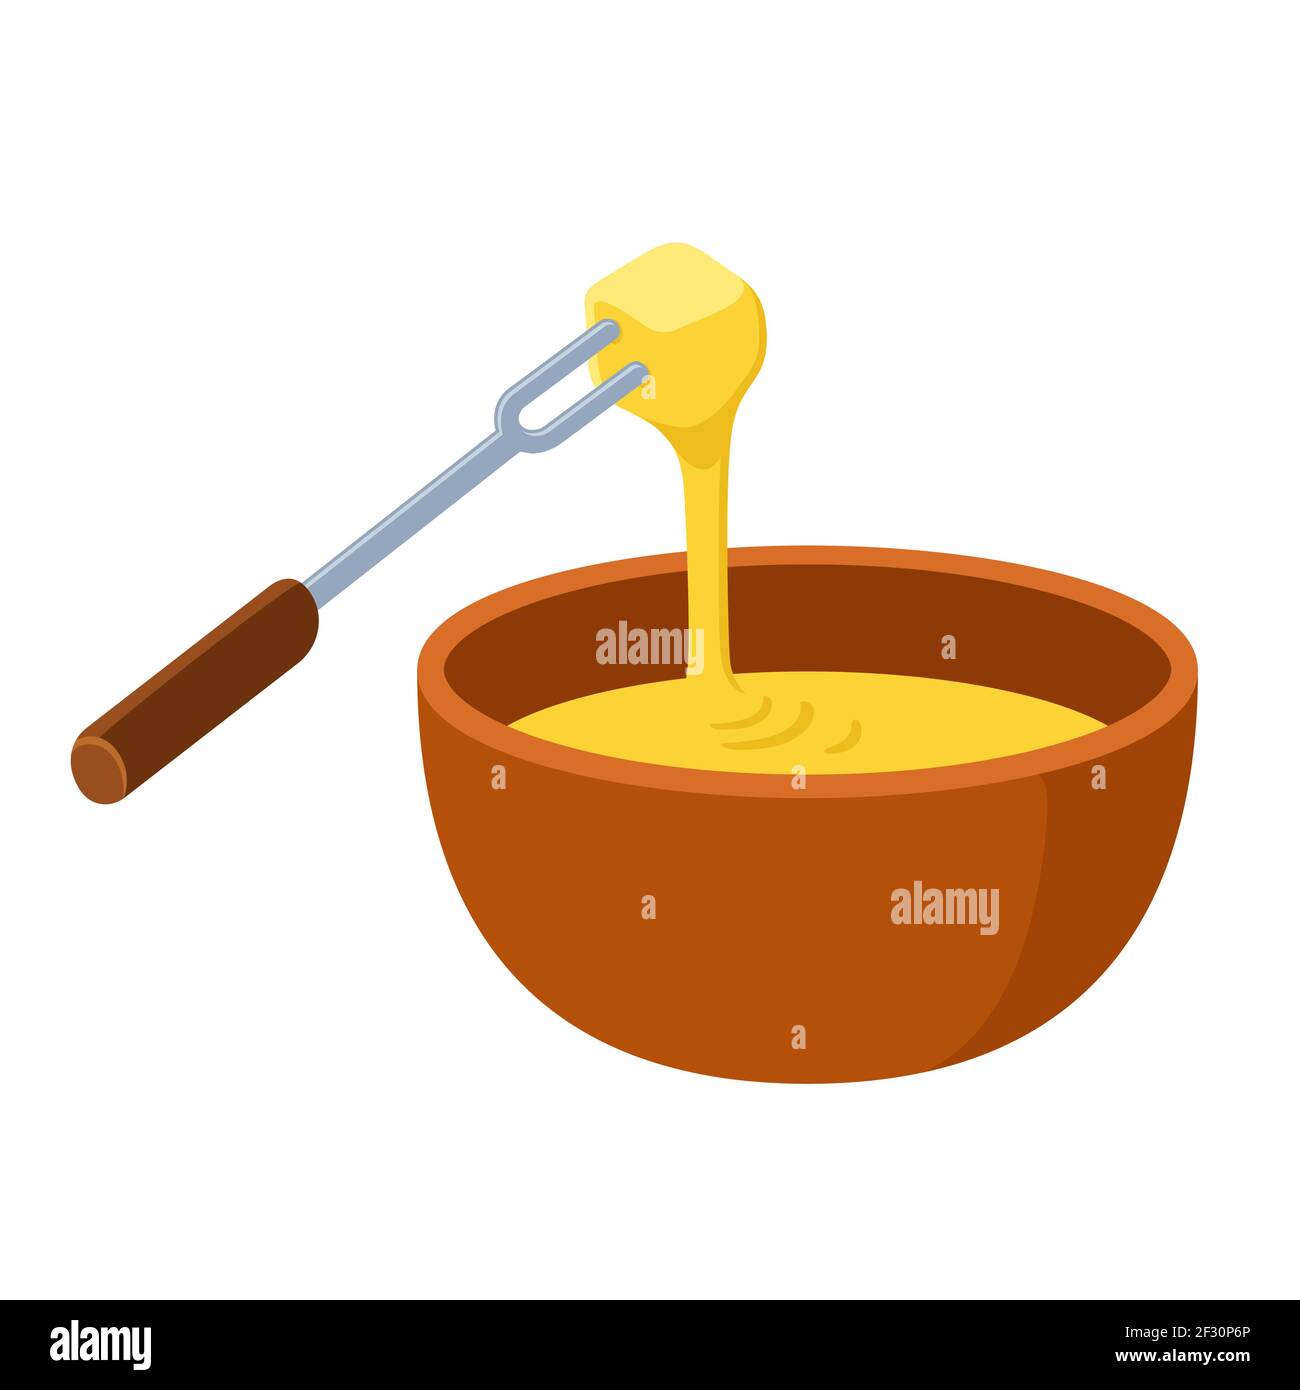 Fondue au fromage, casserole suisse traditionnelle, trempette dans du fromage fondu. Illustration de clip art vectoriel de dessin animé. Illustration de Vecteur